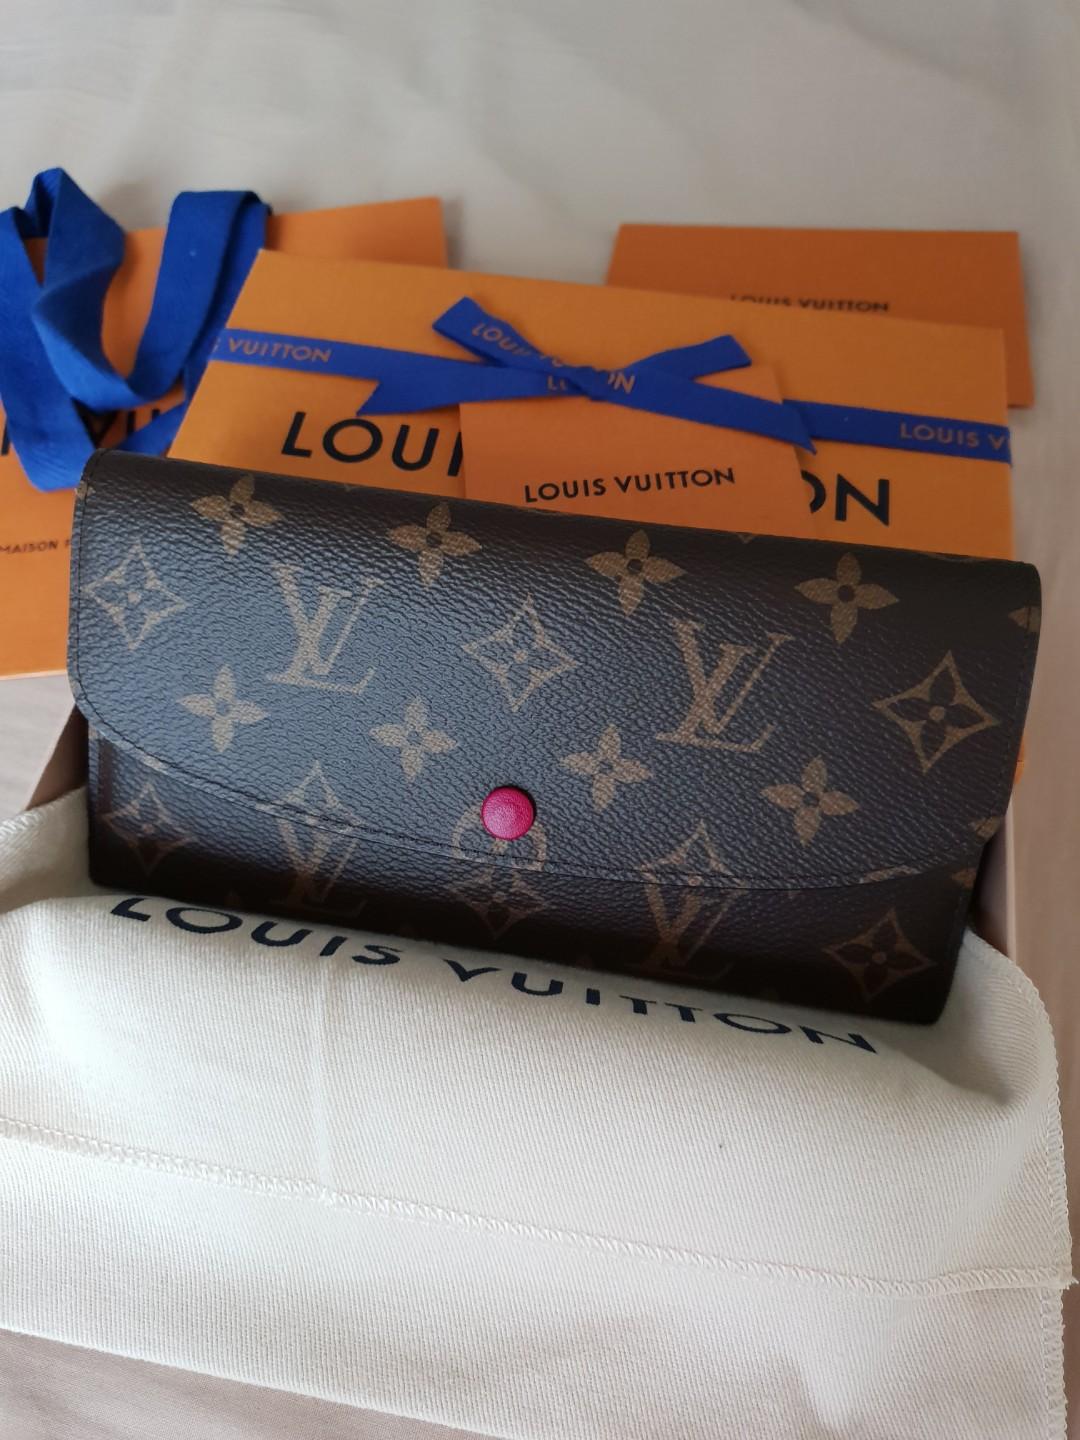 Louis Vuitton Emilie wallet, Unboxing & Overview